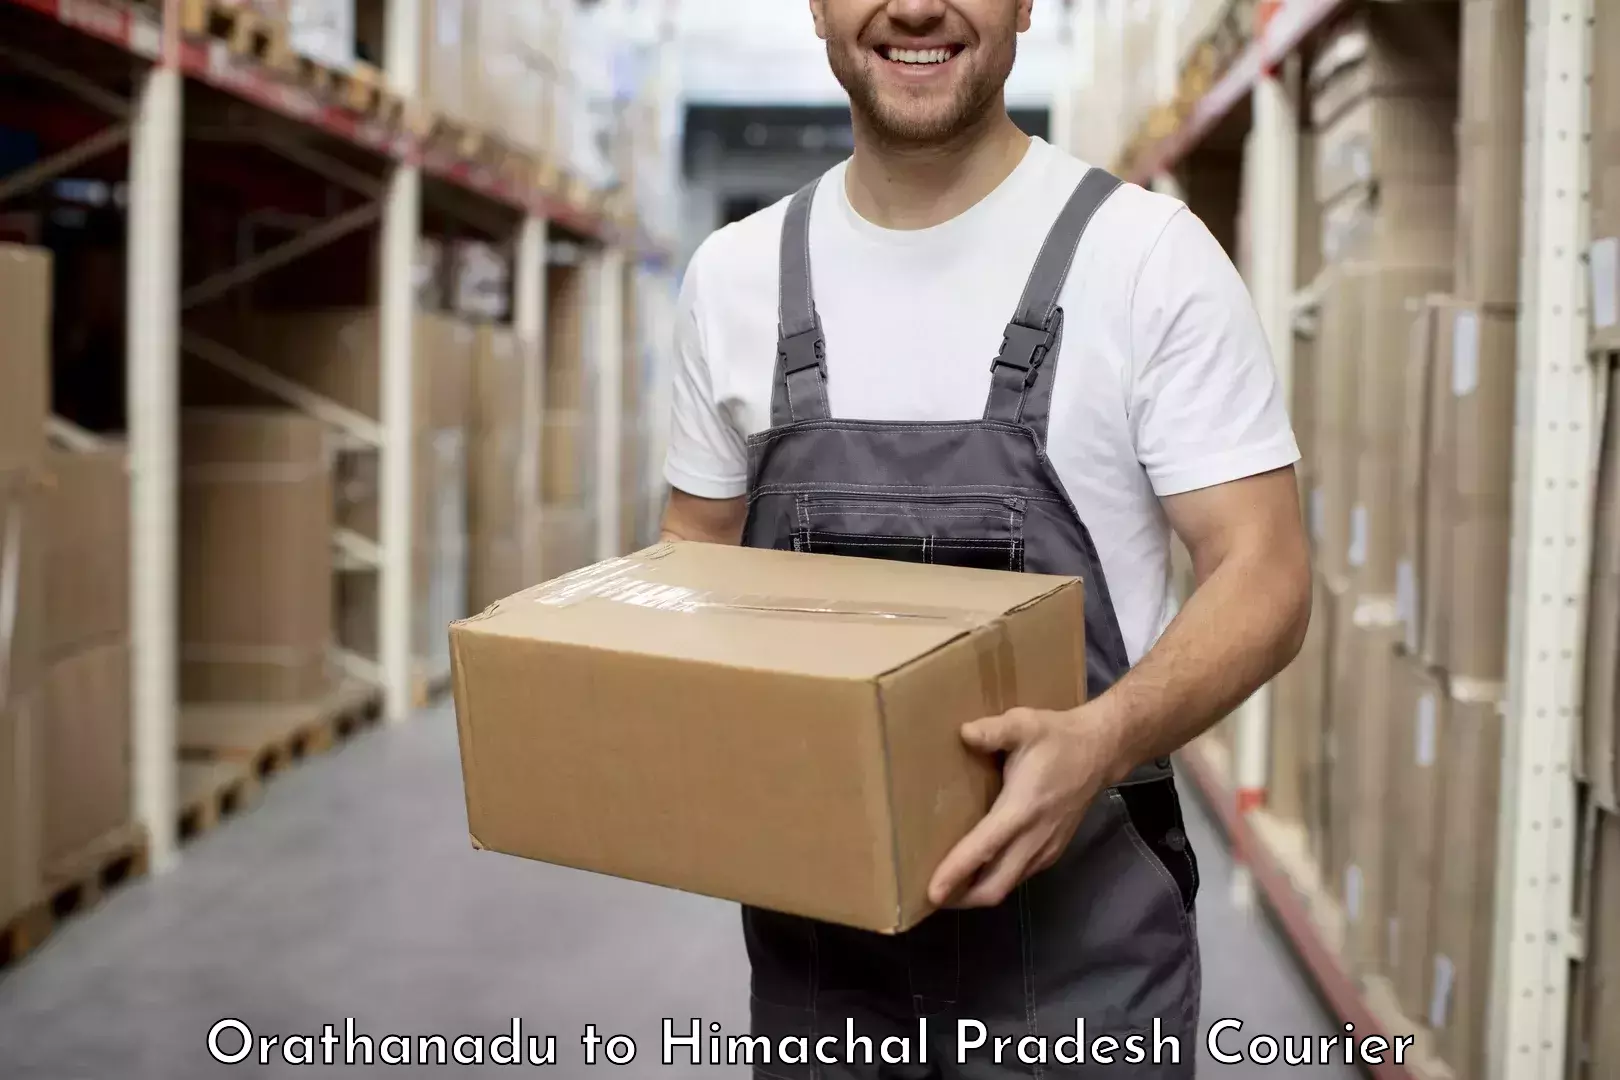 Efficient parcel service Orathanadu to Dalhousie